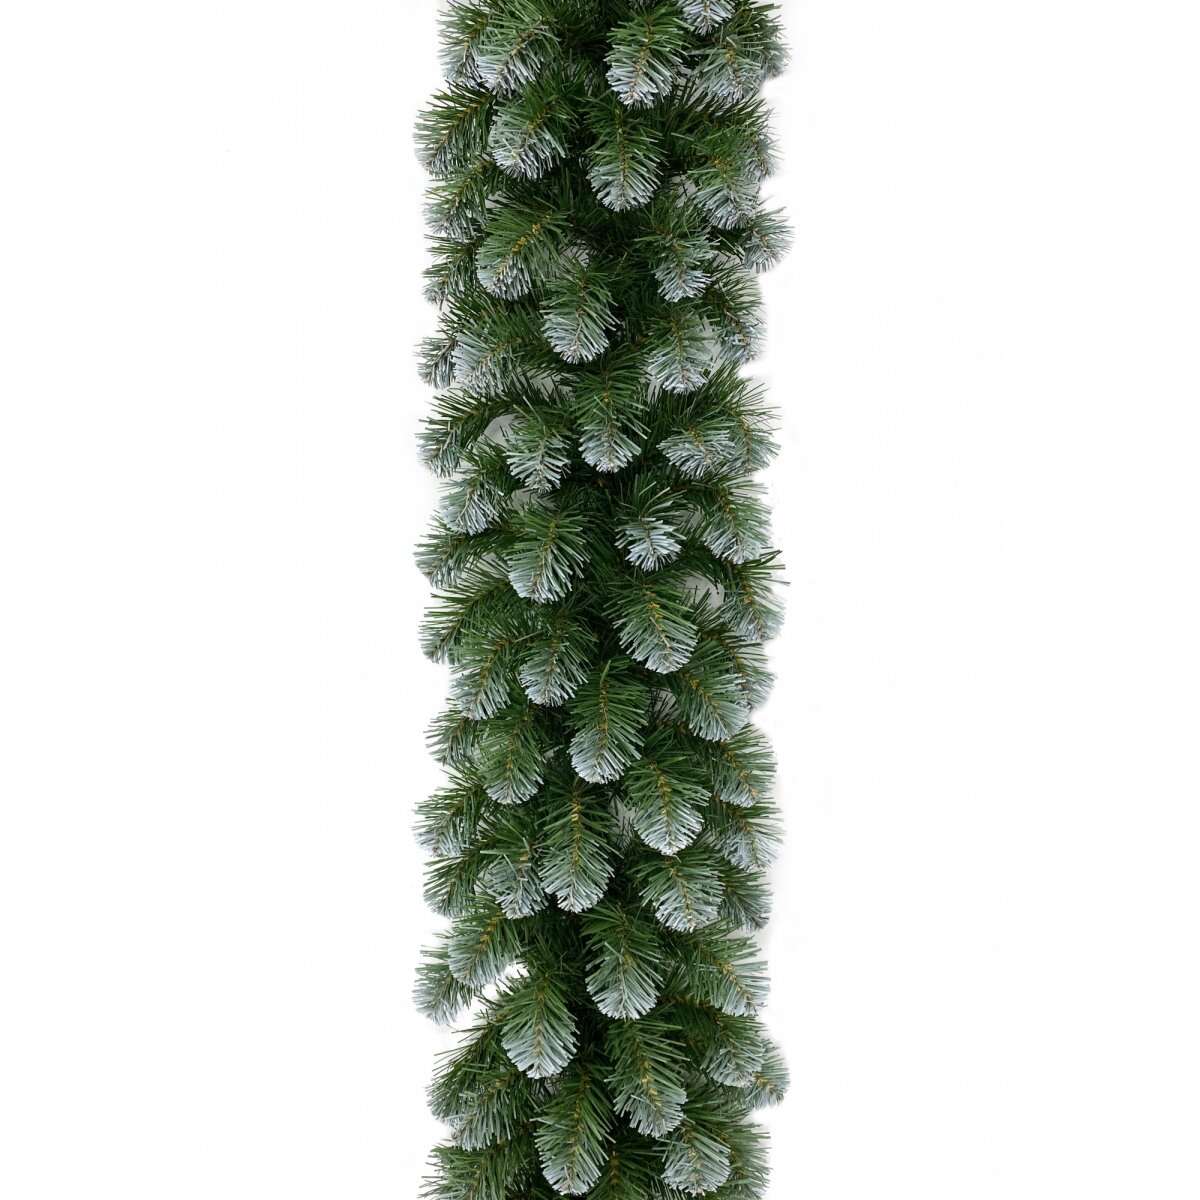 Хвойная гирлянда колорадо заснеженная, хвоя - PVC, 270х30 см, Triumph Tree 73928